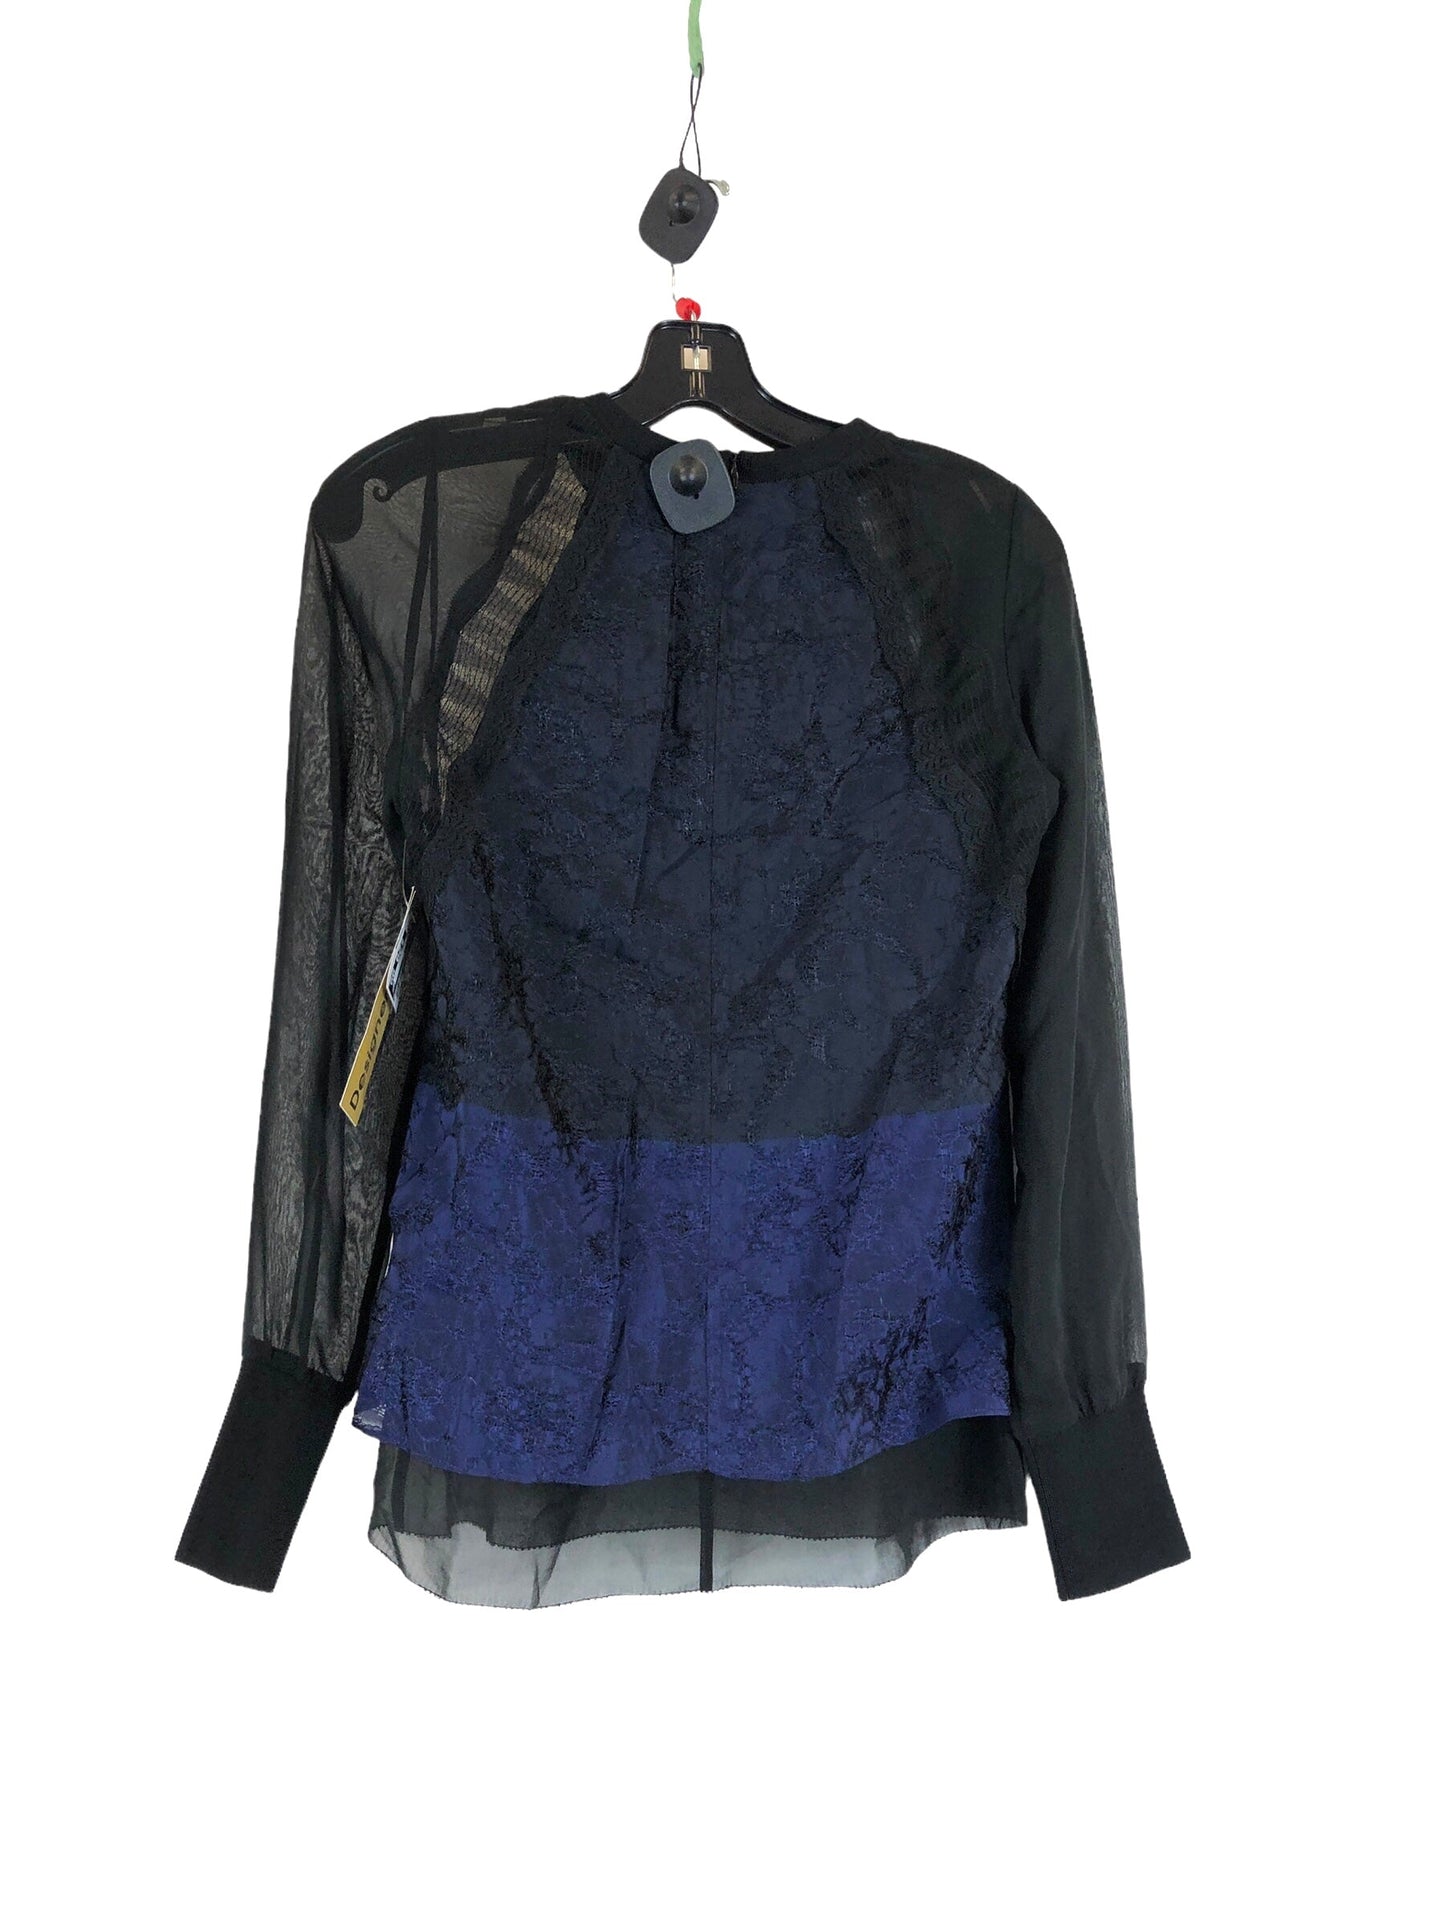 Black & Blue Blouse Designer 3.1 Phillip Lim, Size Xs